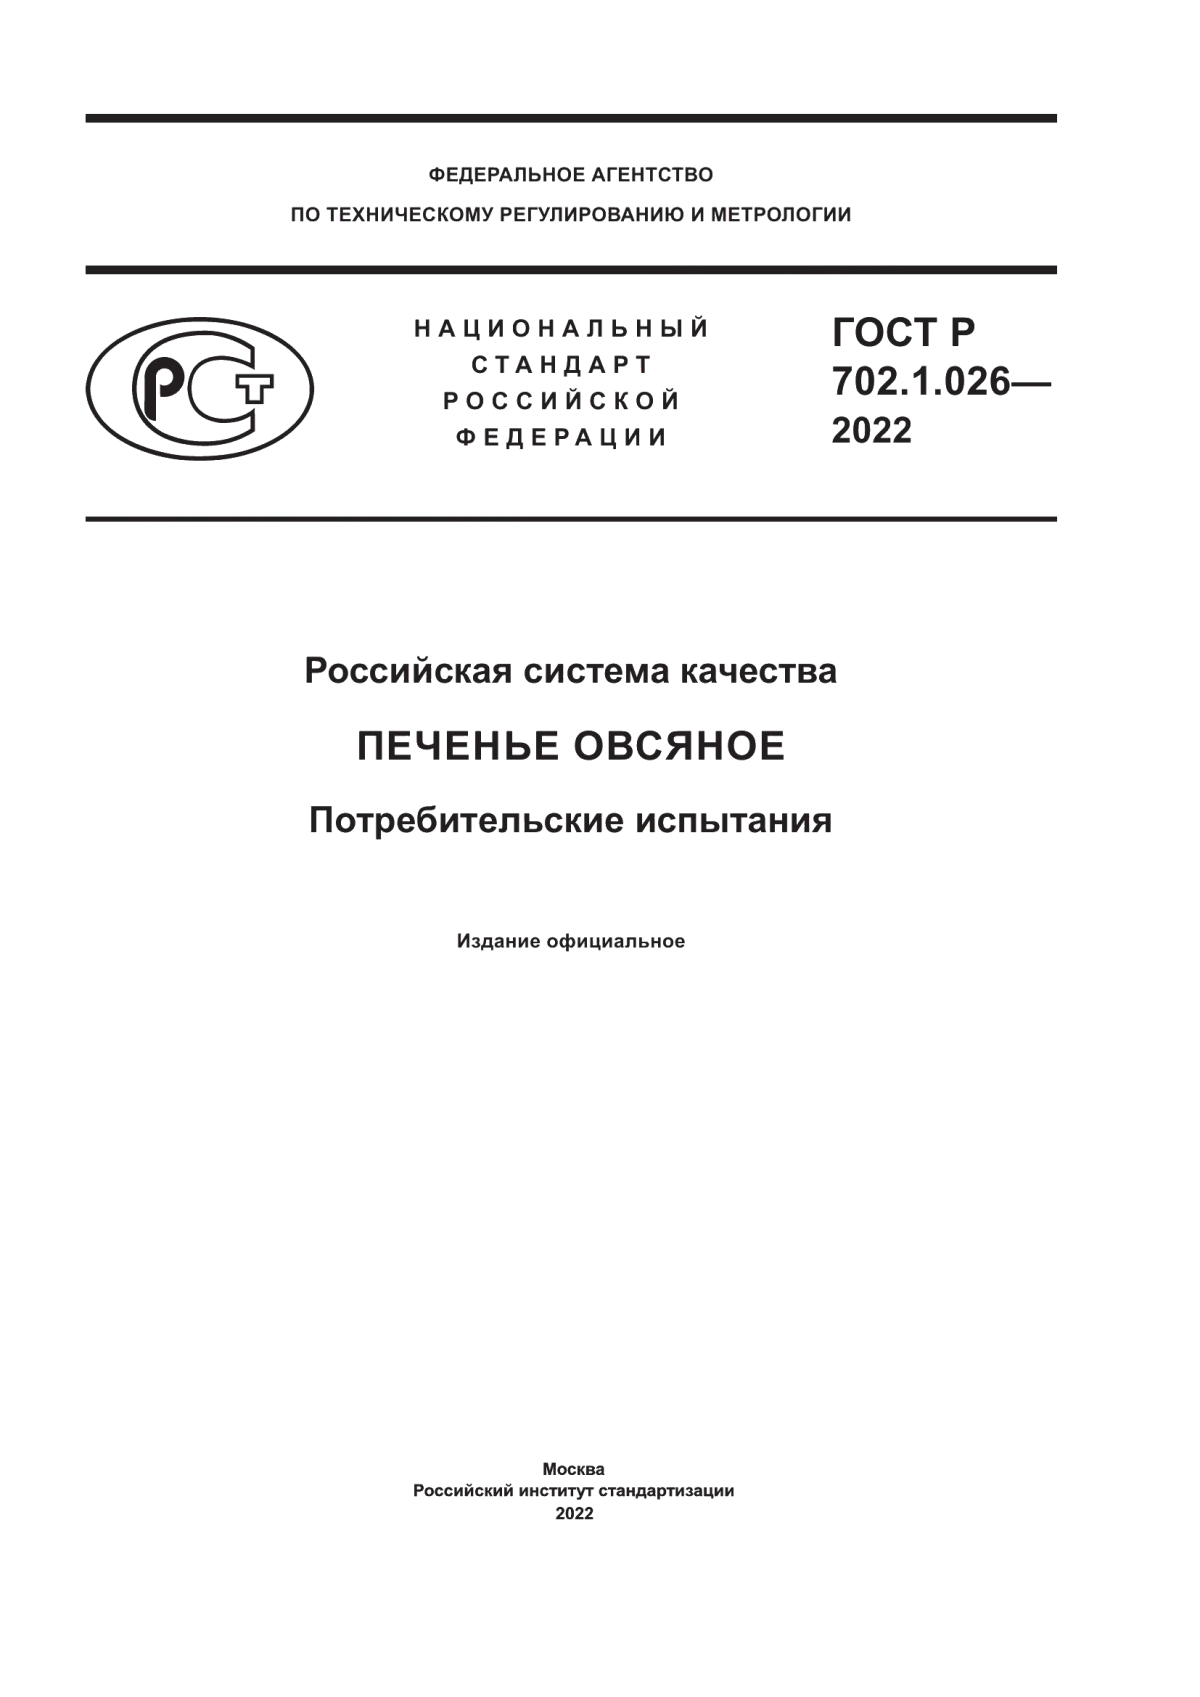 ГОСТ Р 702.1.026-2022 Российская система качества. Печенье овсяное. Потребительские испытания